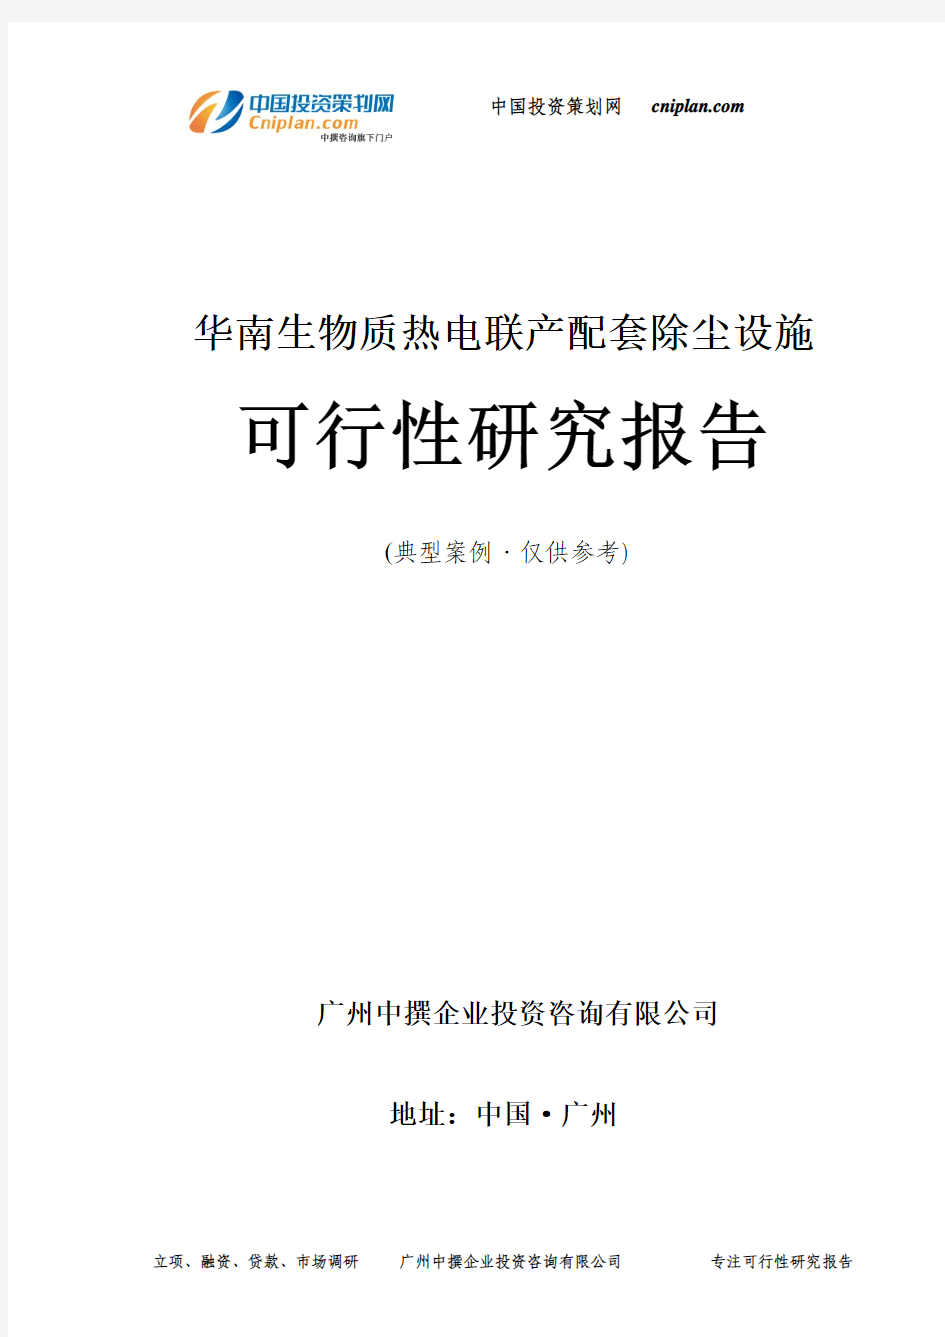 华南生物质热电联产配套除尘设施可行性研究报告-广州中撰咨询